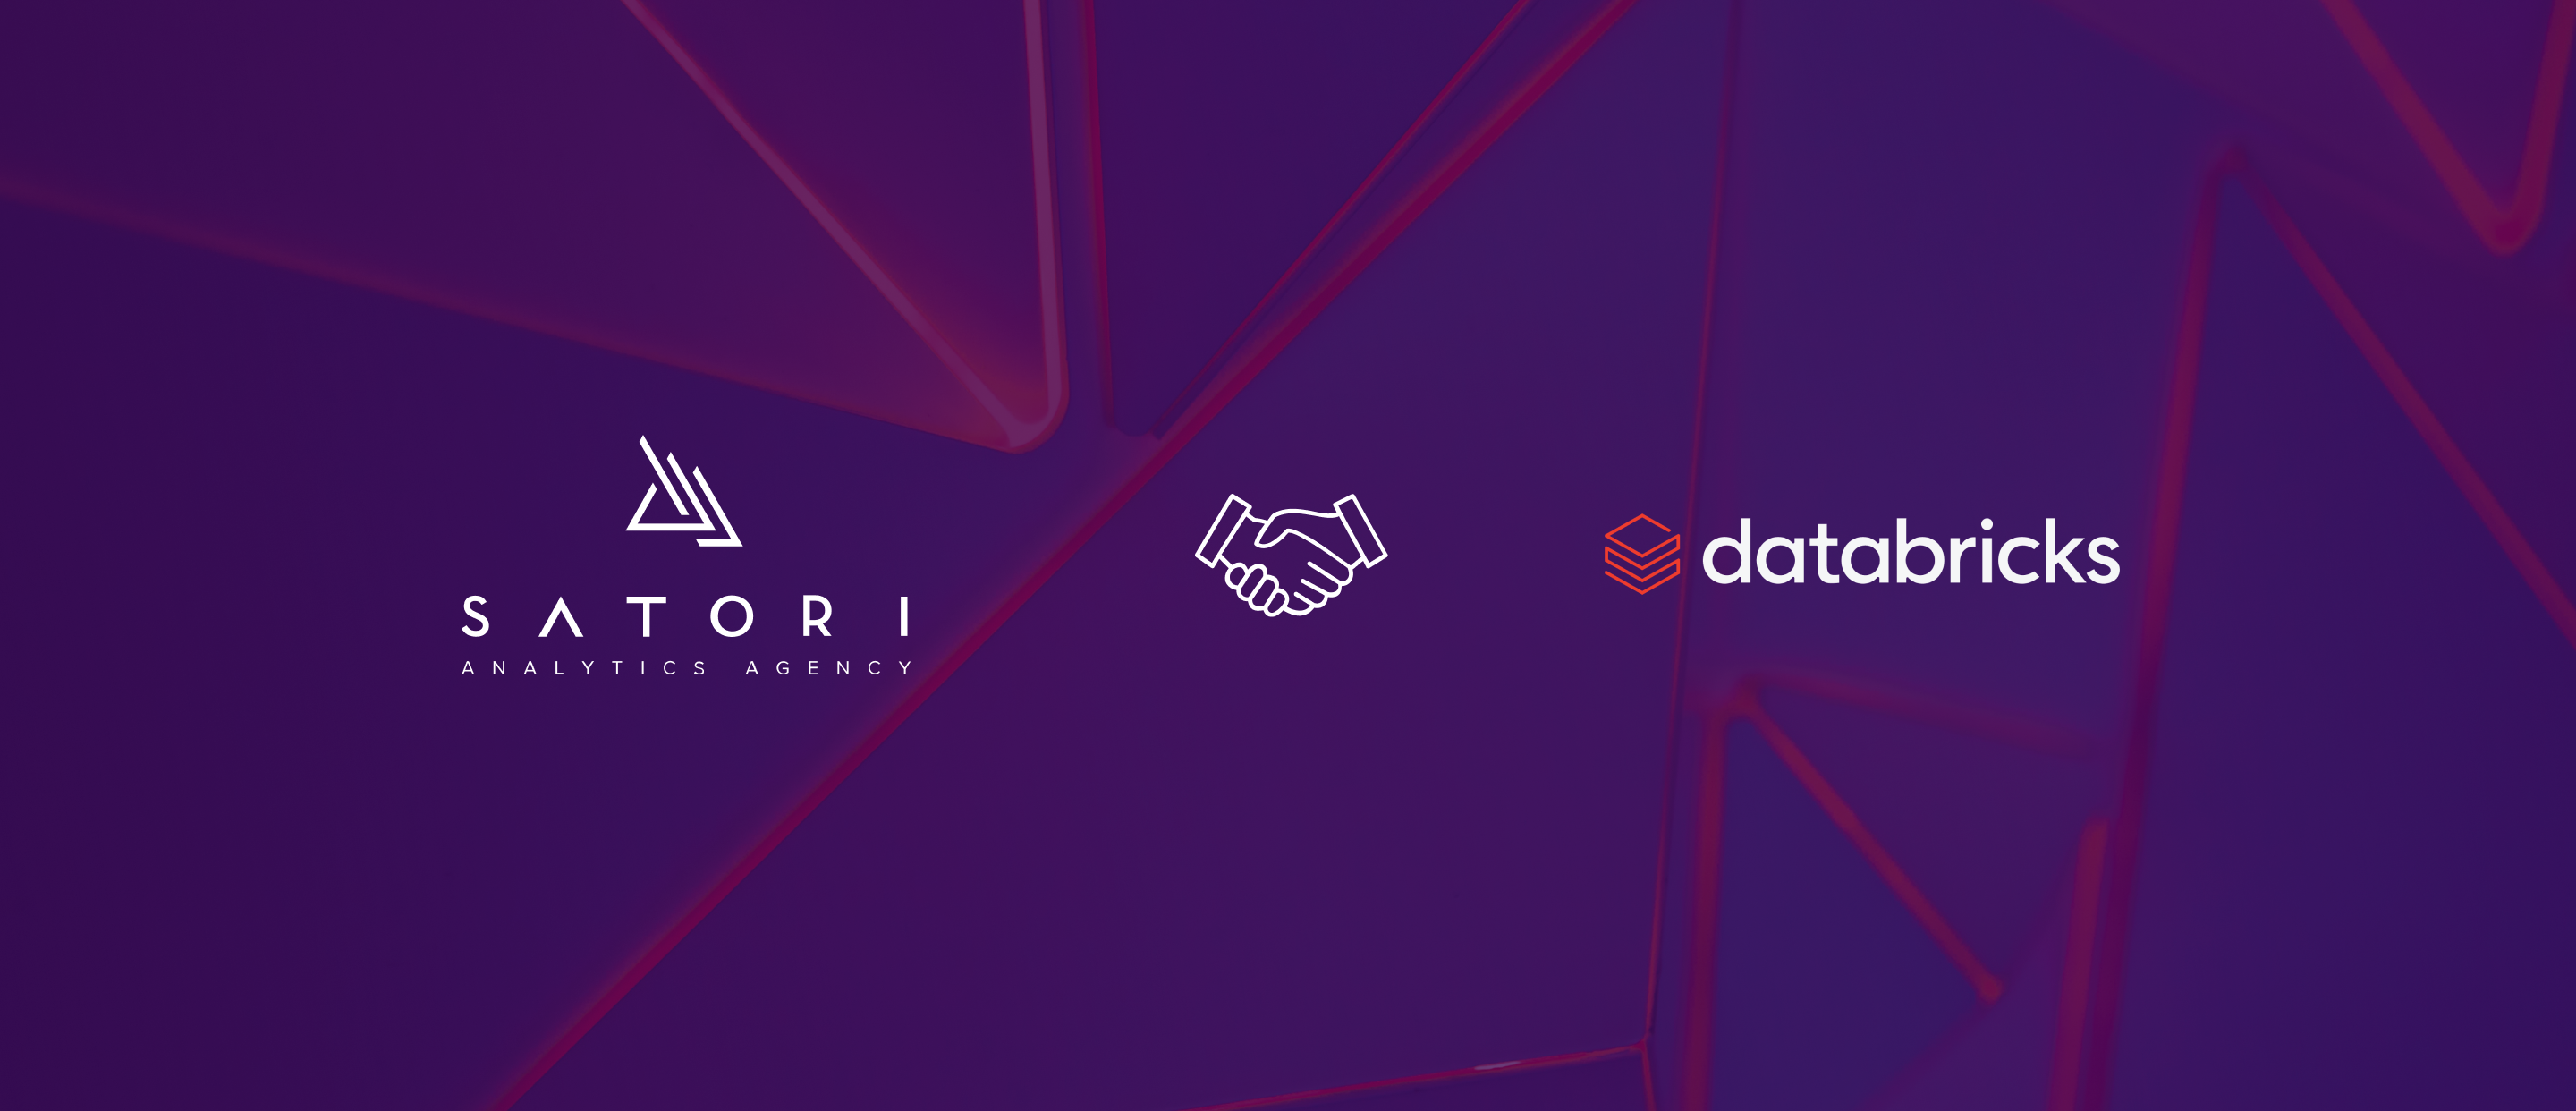 Partnership with Databricks